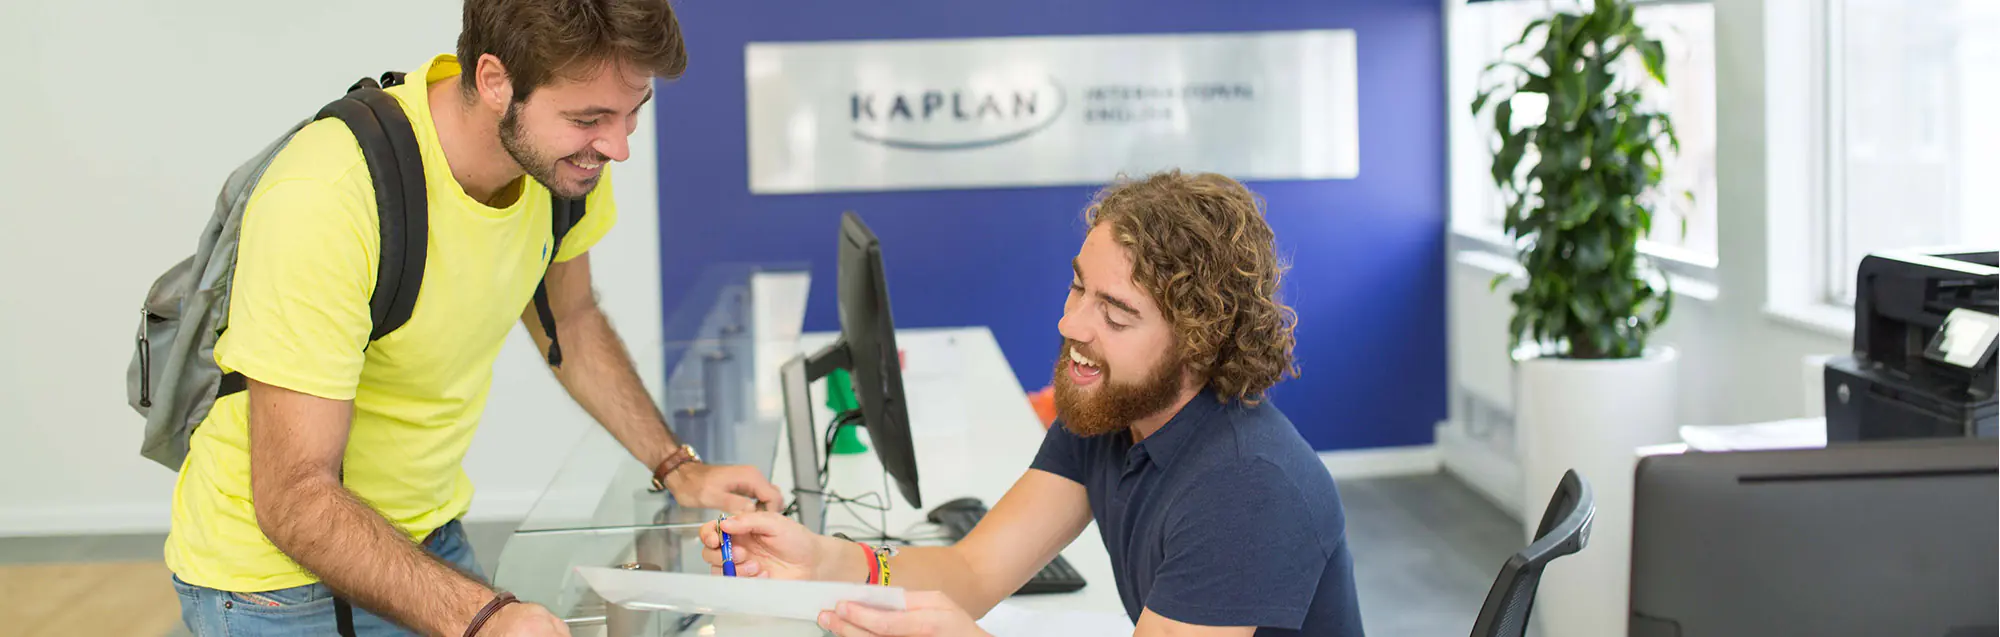 Programas inglés + trabajo remunerado de Kaplan Liverpool